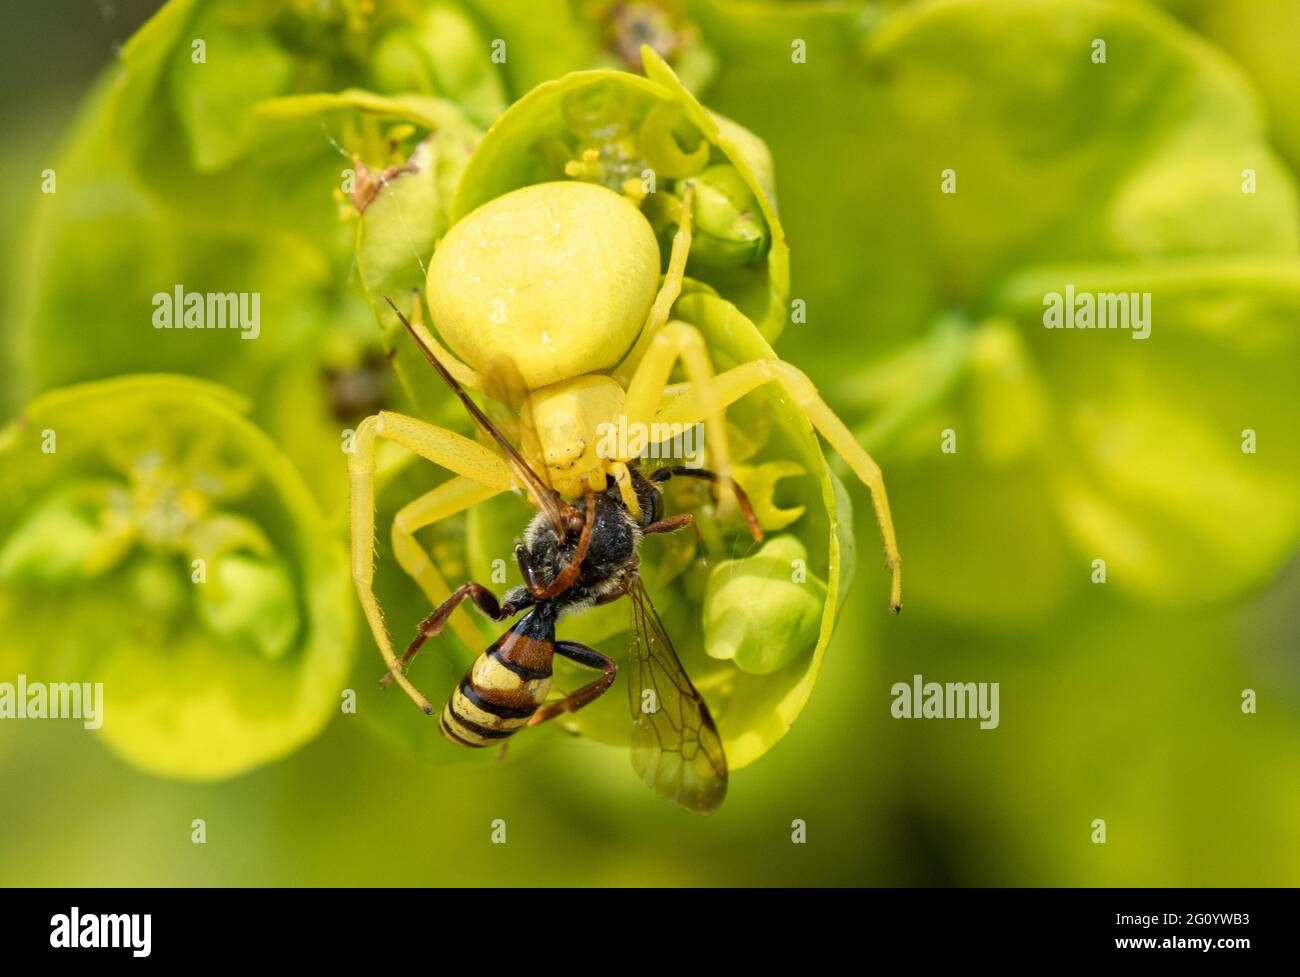 Blumenkrabbenspinne (Misumena vatia) nach dem Fang von Beute, einer einsamen Nomadenbiene, auf Holzspurgen, Großbritannien. Gelbe Spinne auf Blume getarnt. Stockfoto